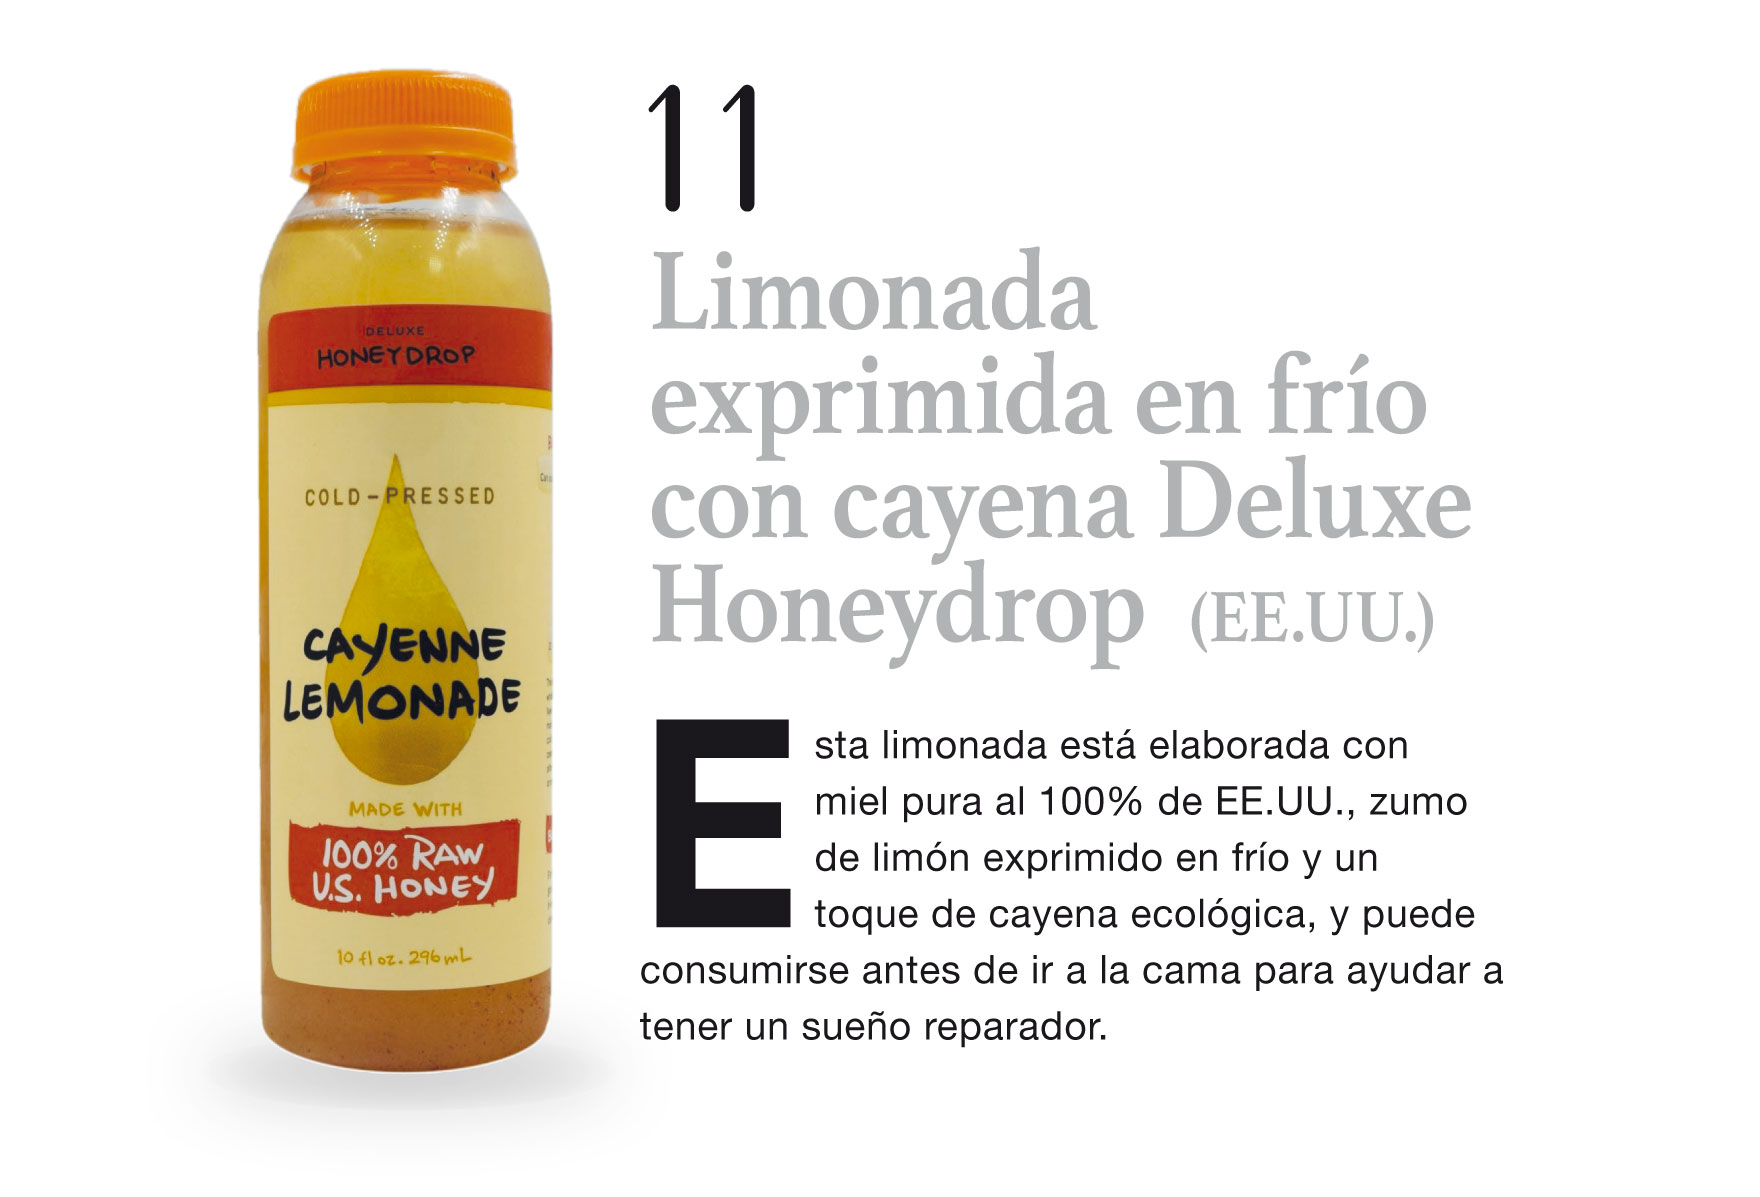 Limonada exprimida en frío con cayena Deluxe Honeydrop (EE.UU.)